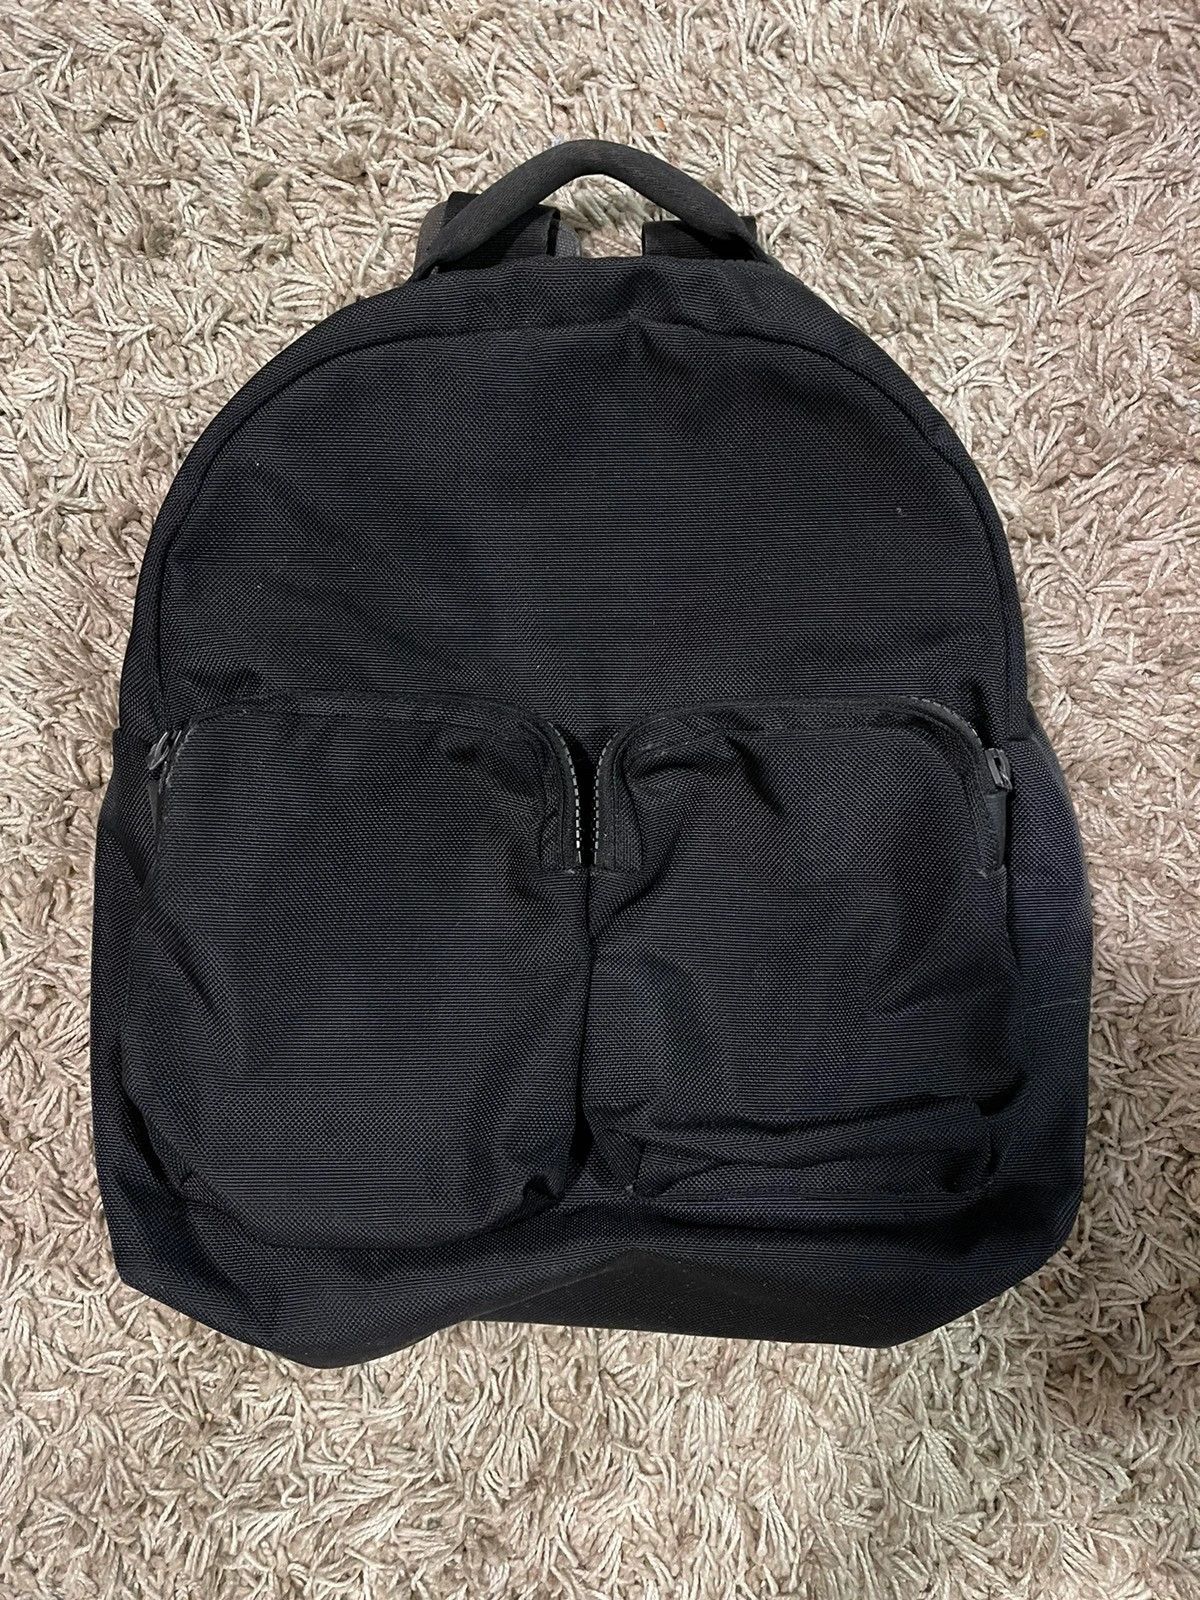 Yeezy Backpack | Grailed